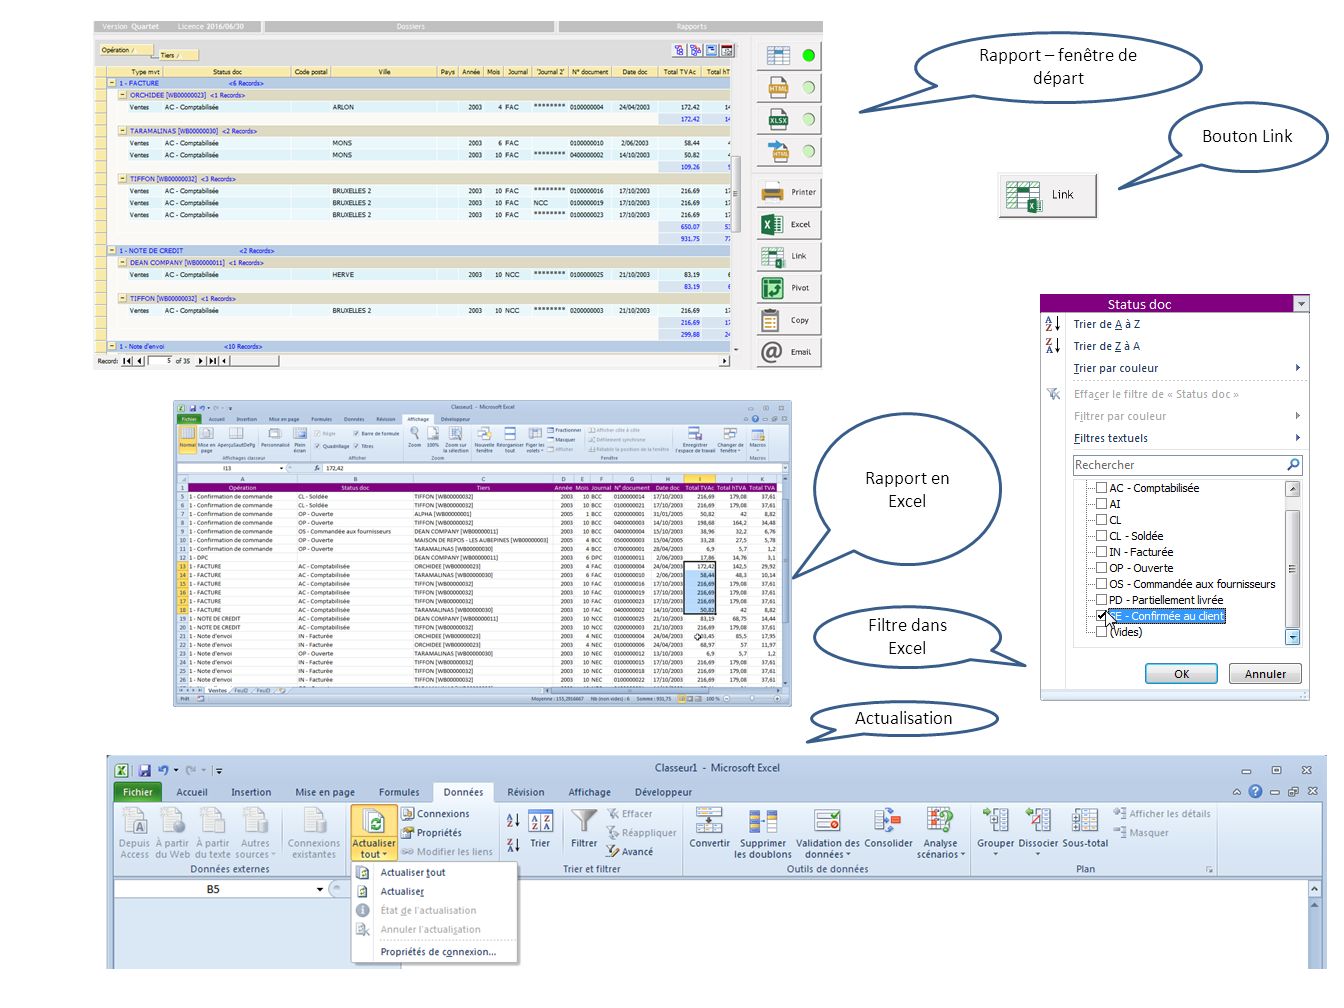 Rapport en Excel Actualisation Filtre dans Excel Bouton Link Rapport – fenêtre de départ